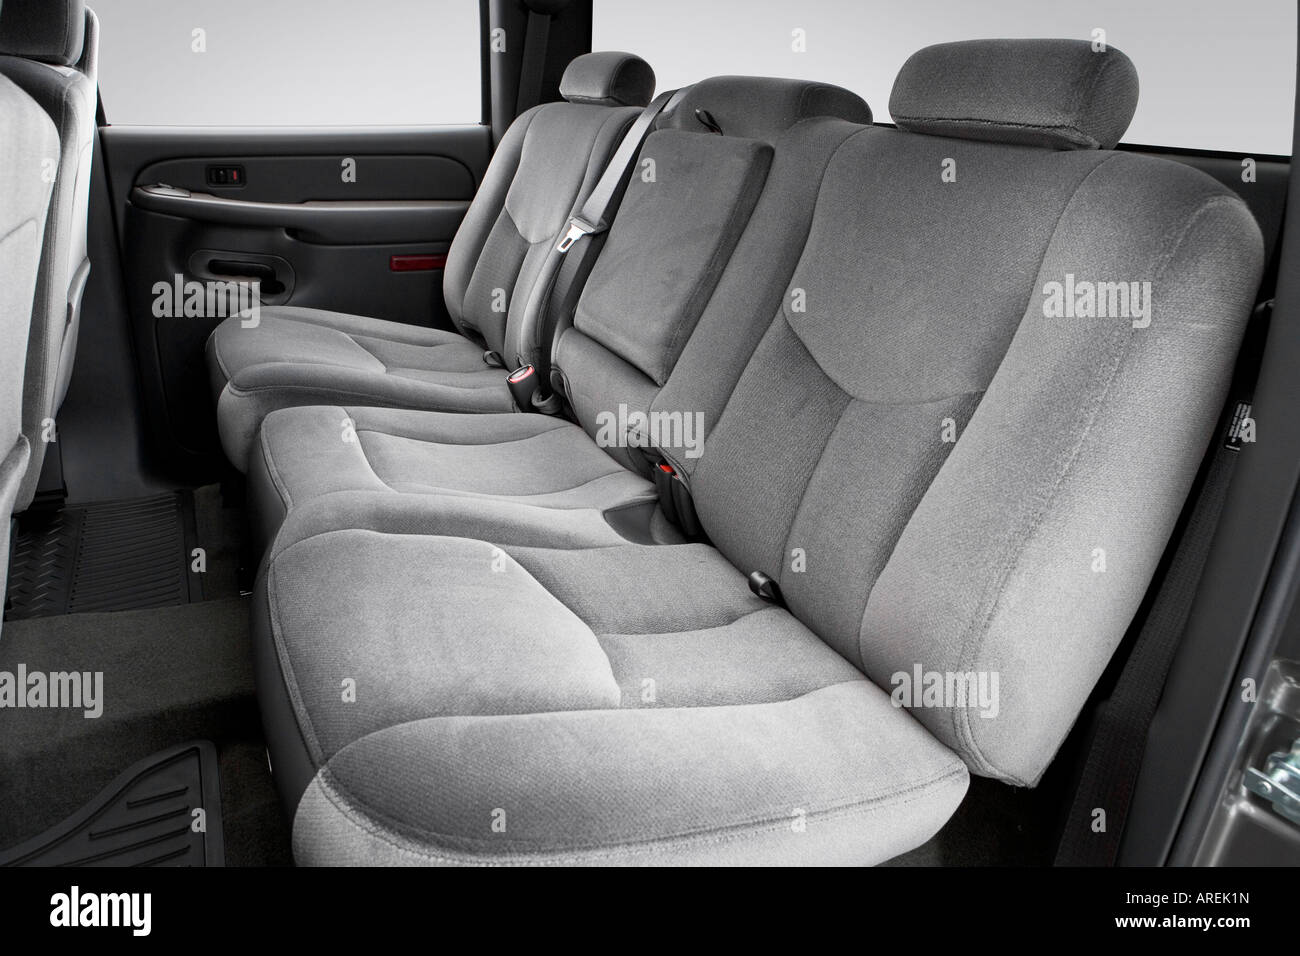 2006 Gmc Sierra 1500 Sle In Gray Rear Seats Stock Photo